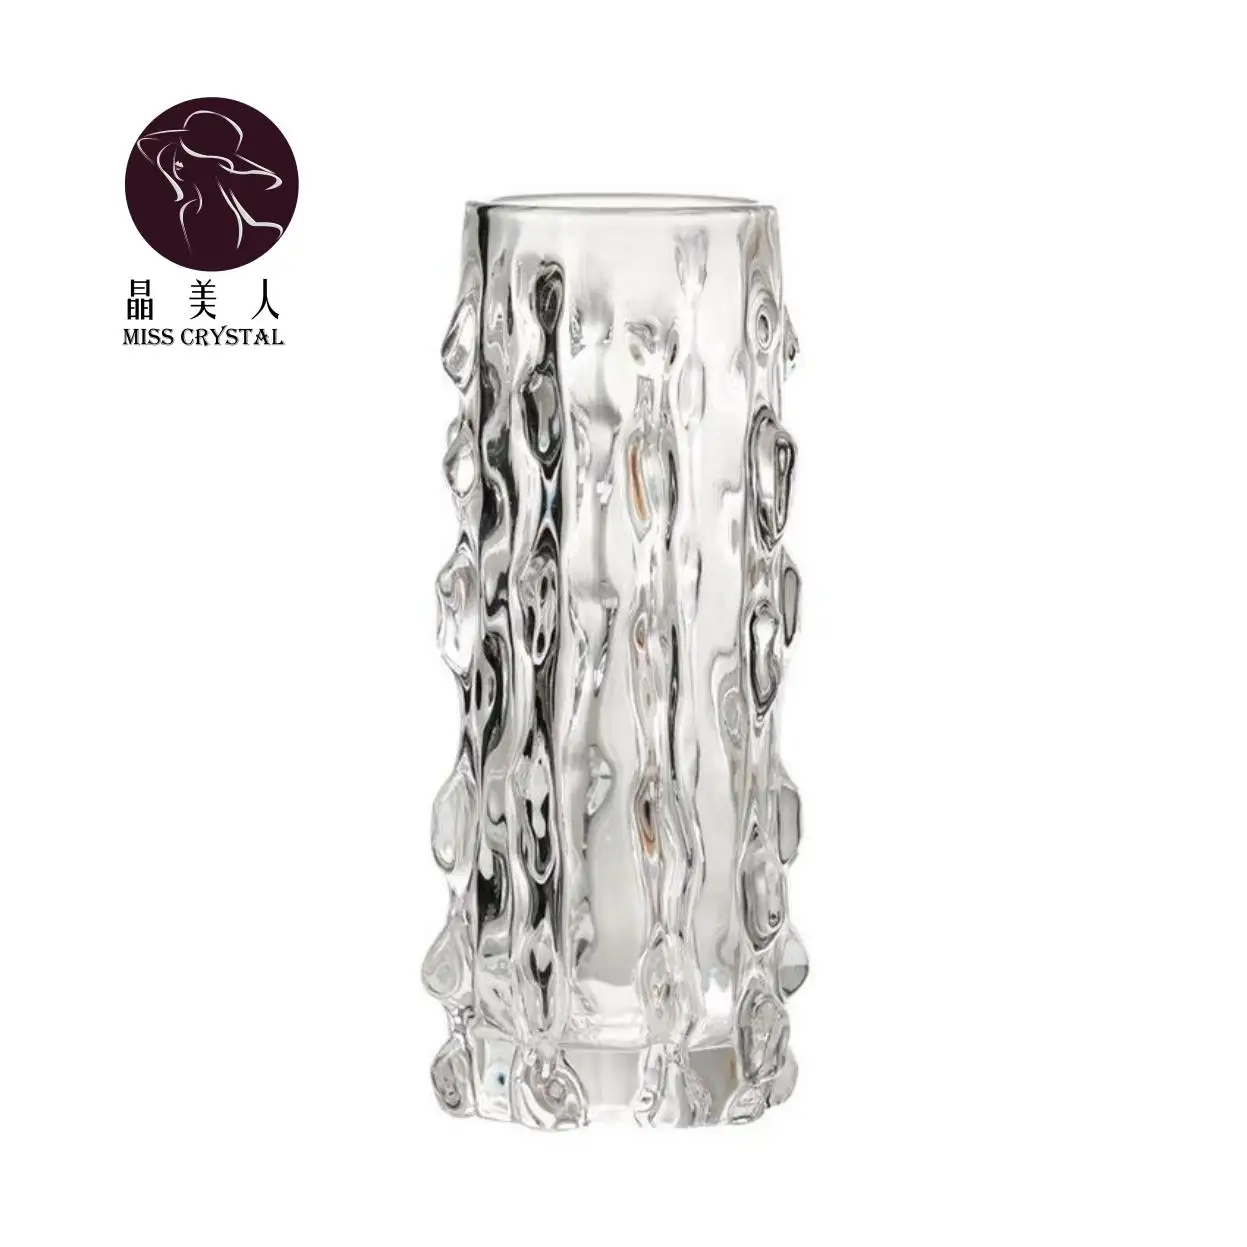 高ホウケイ酸ガラス用のヨーロピアンアメリカンスタイルの水滴型ナマコクリスタル花瓶